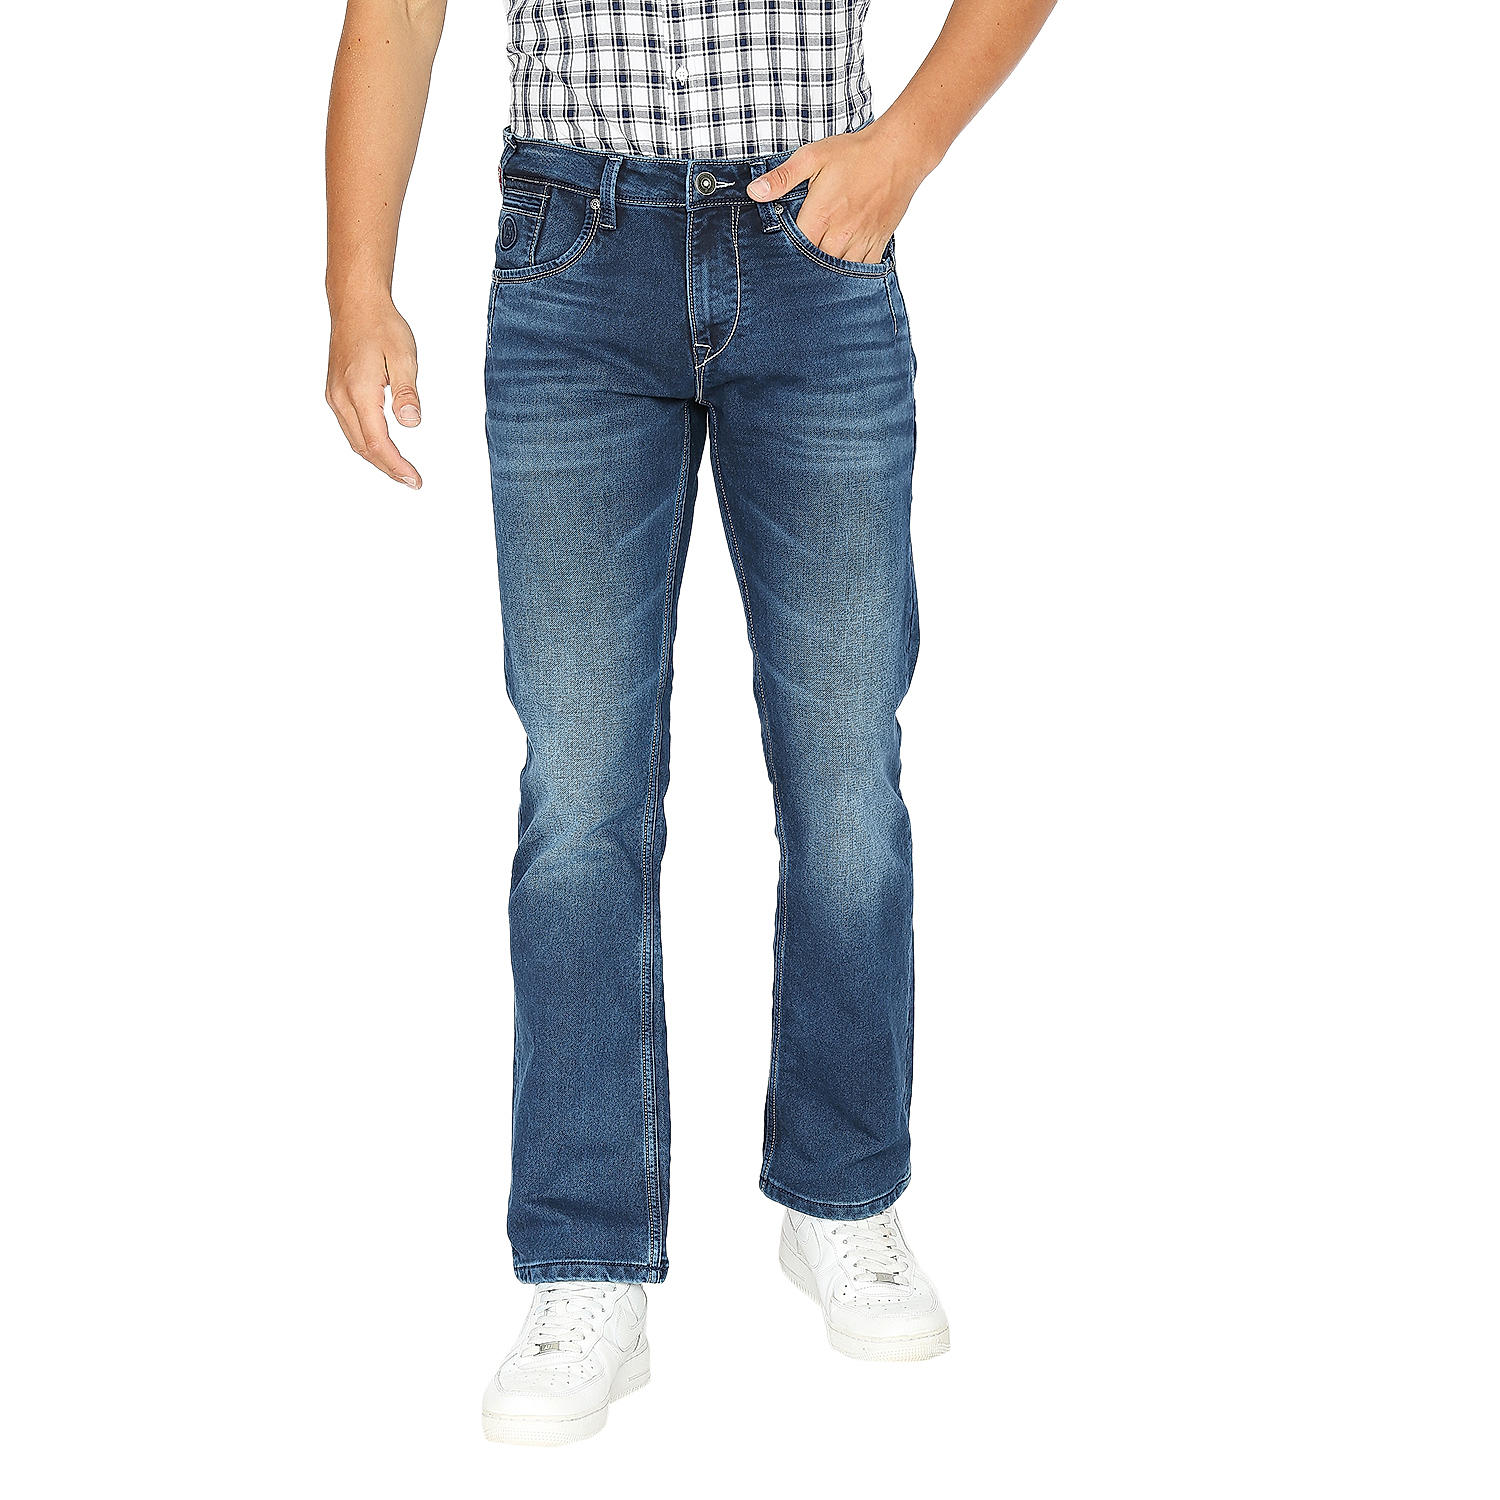 Lawman Blue Boot Cut Fit Solid Jeans For Men